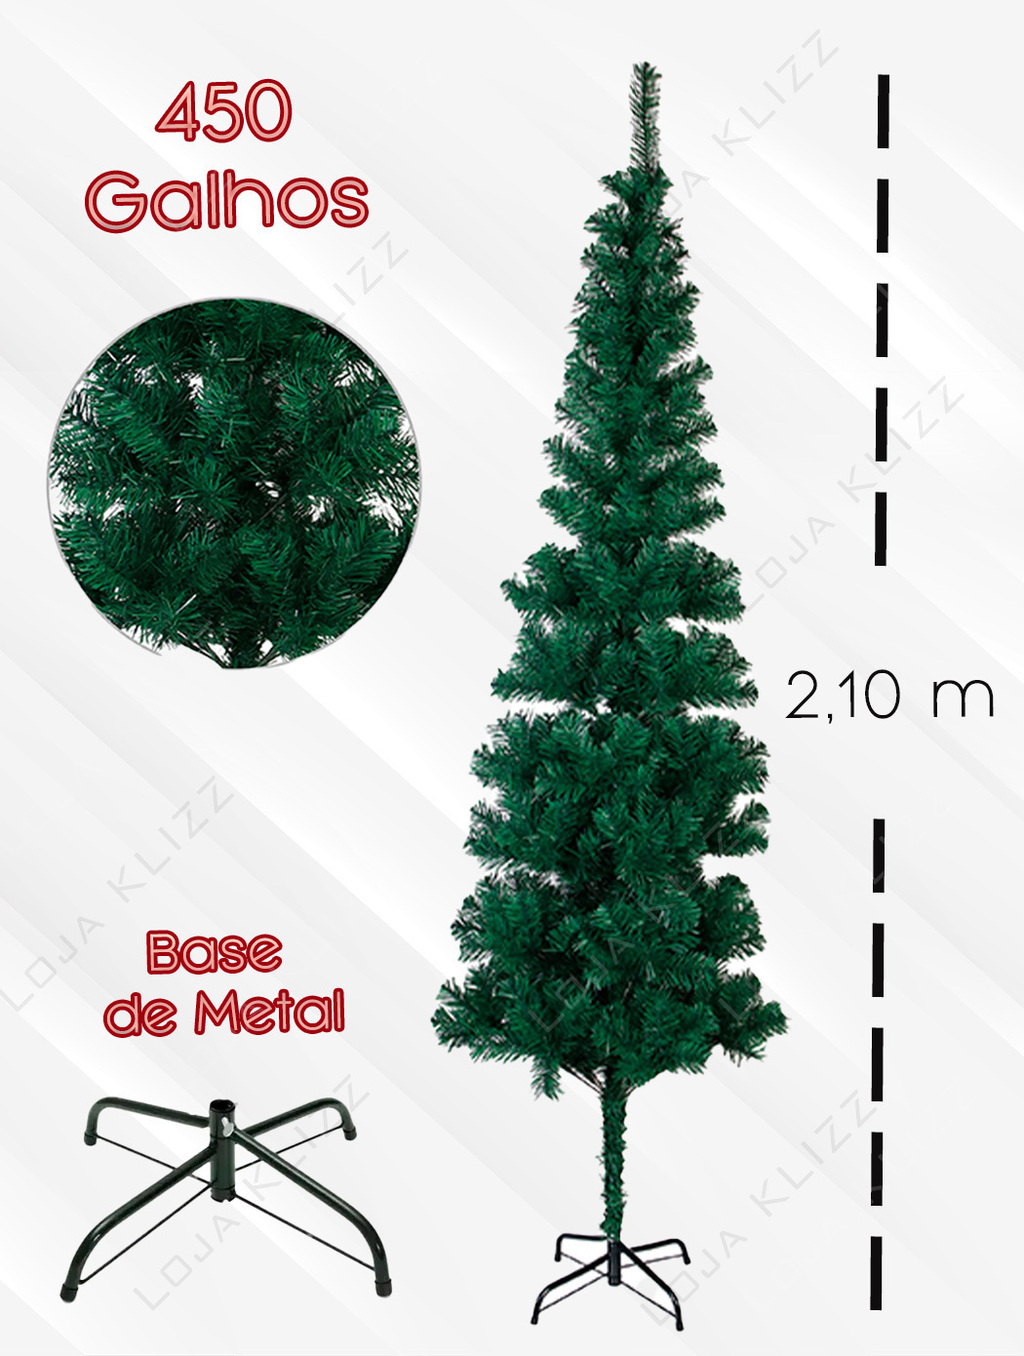 CLF Artesanato - Árvore de Natal Grande - Medida 52cm de altura